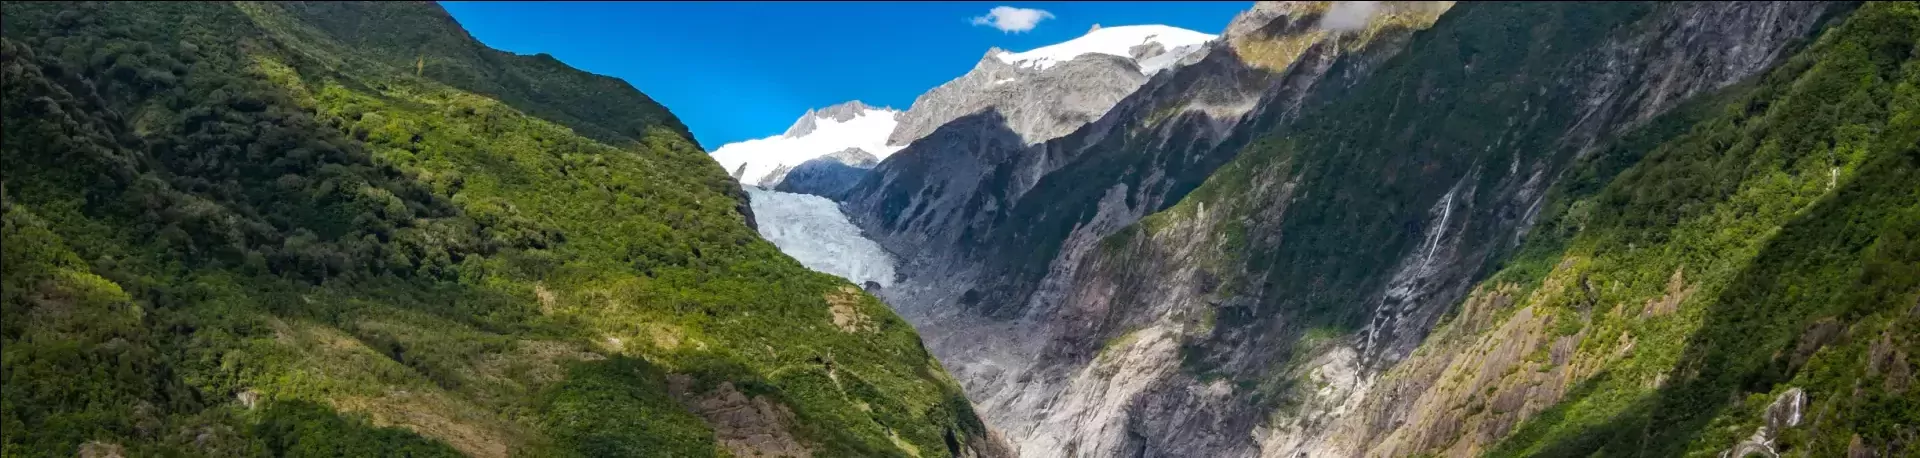 Nieuw-Zeeland Franz Josef gletsjer